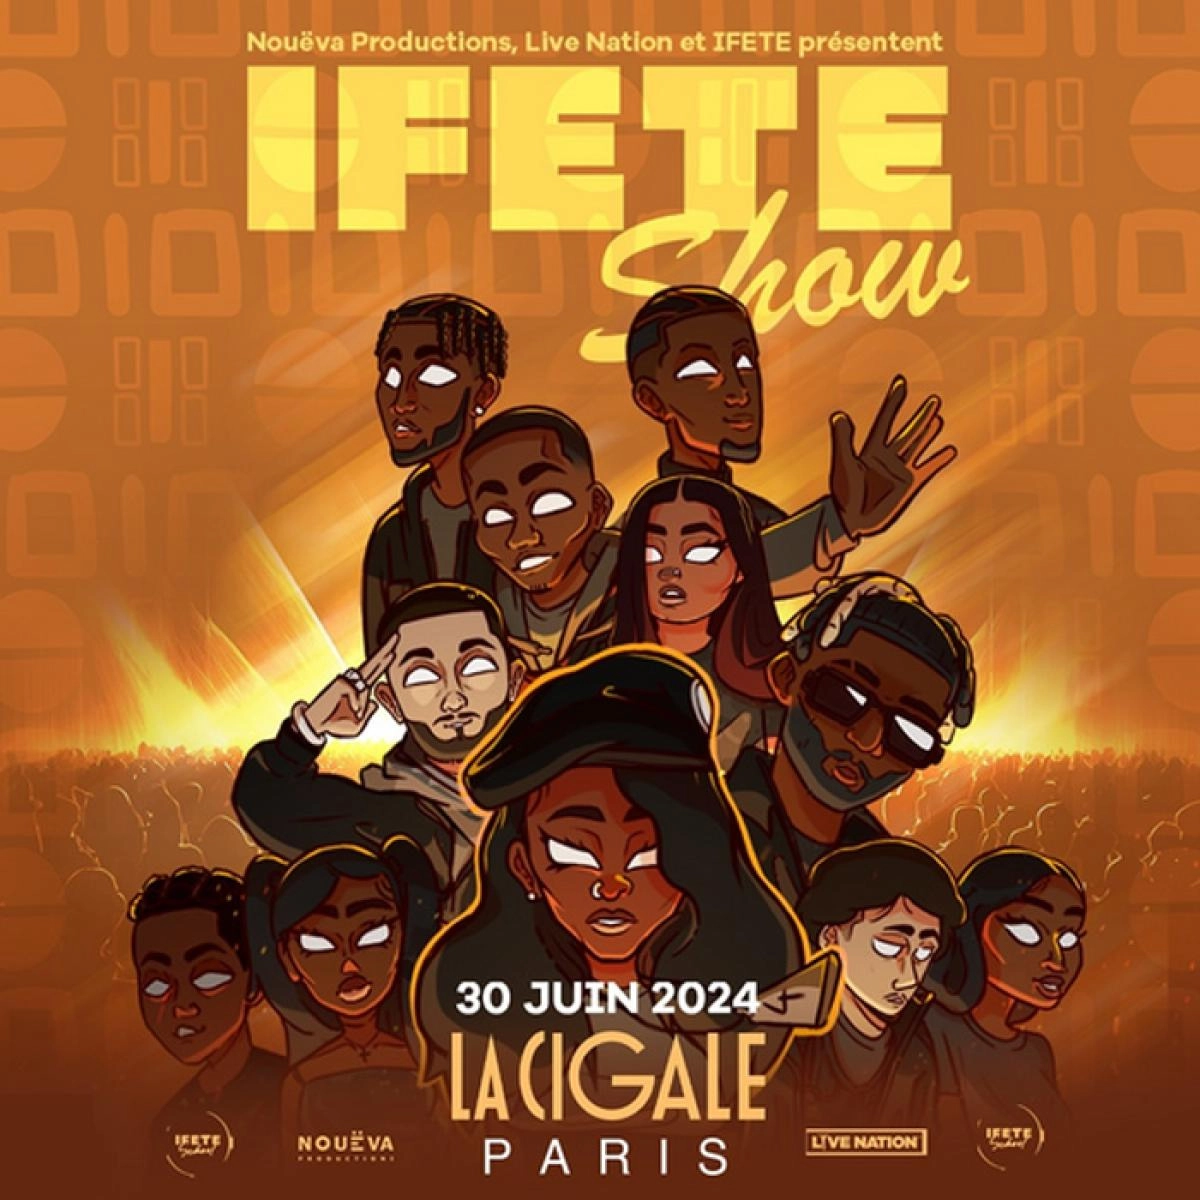 Ifete Show at La Cigale Tickets